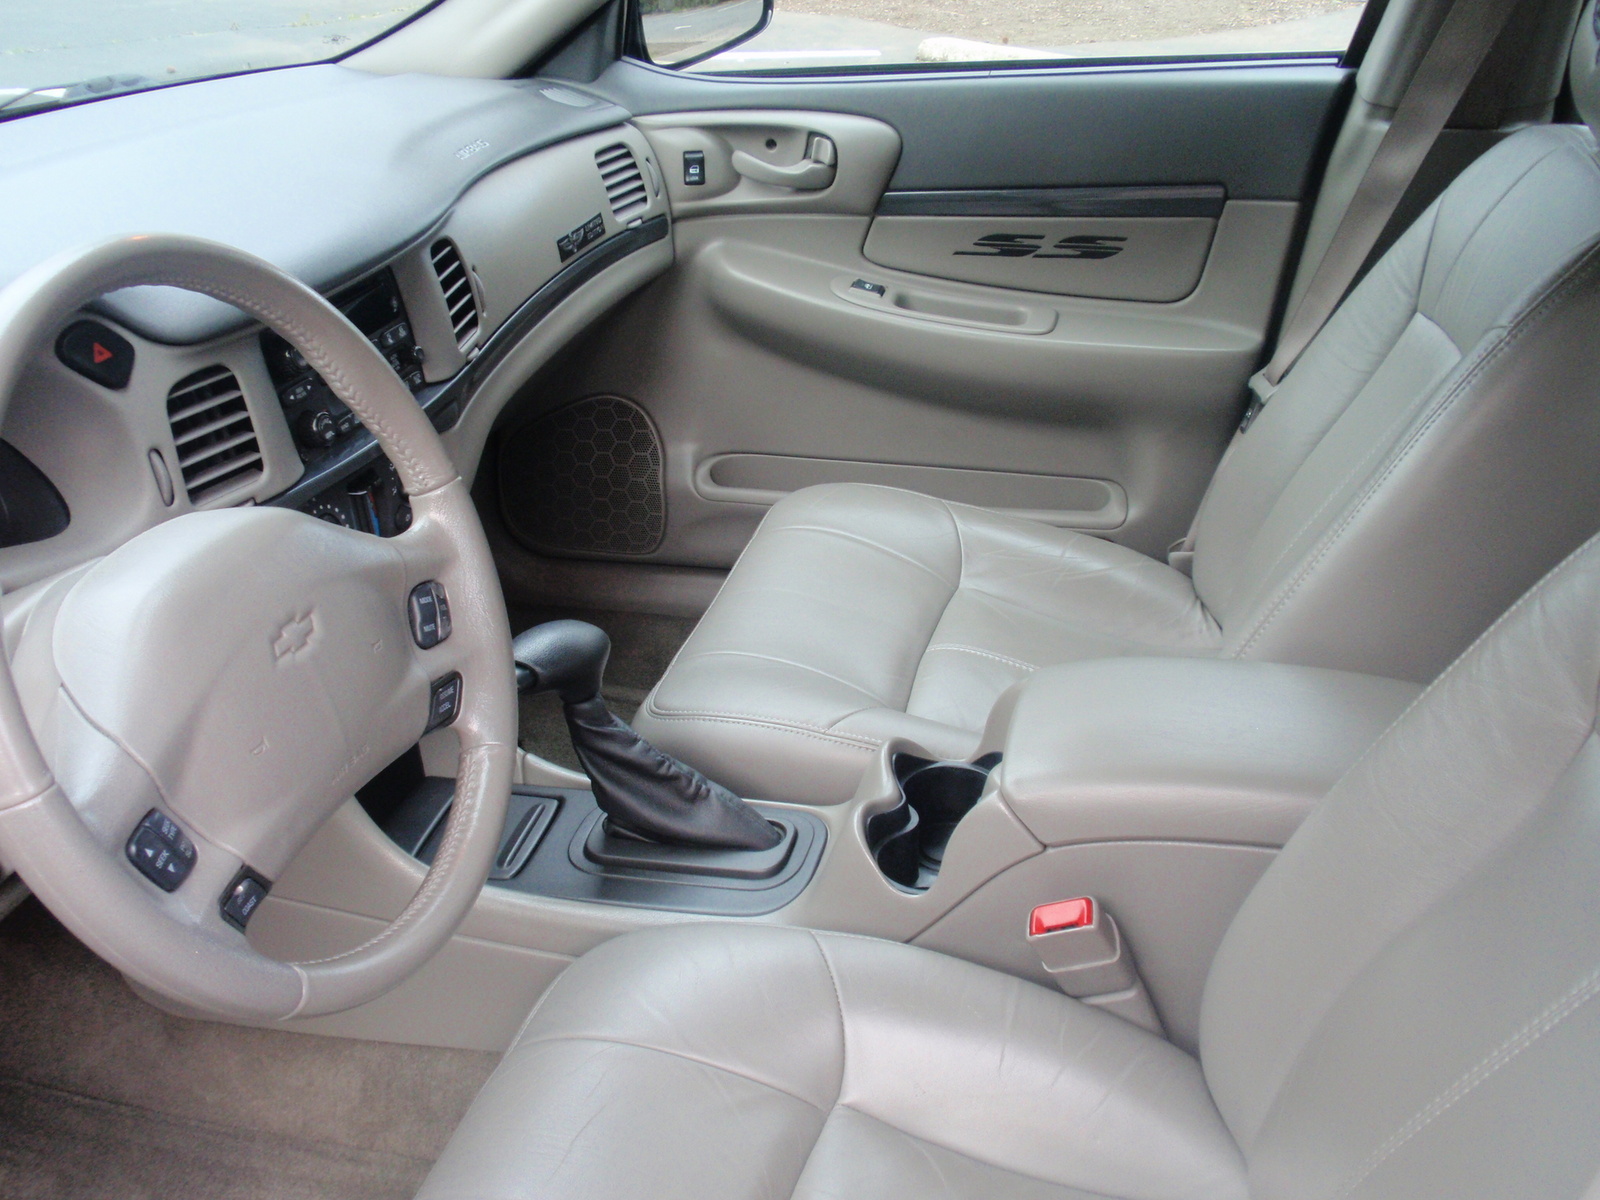 2004 Chevrolet Impala - Pictures - CarGurus